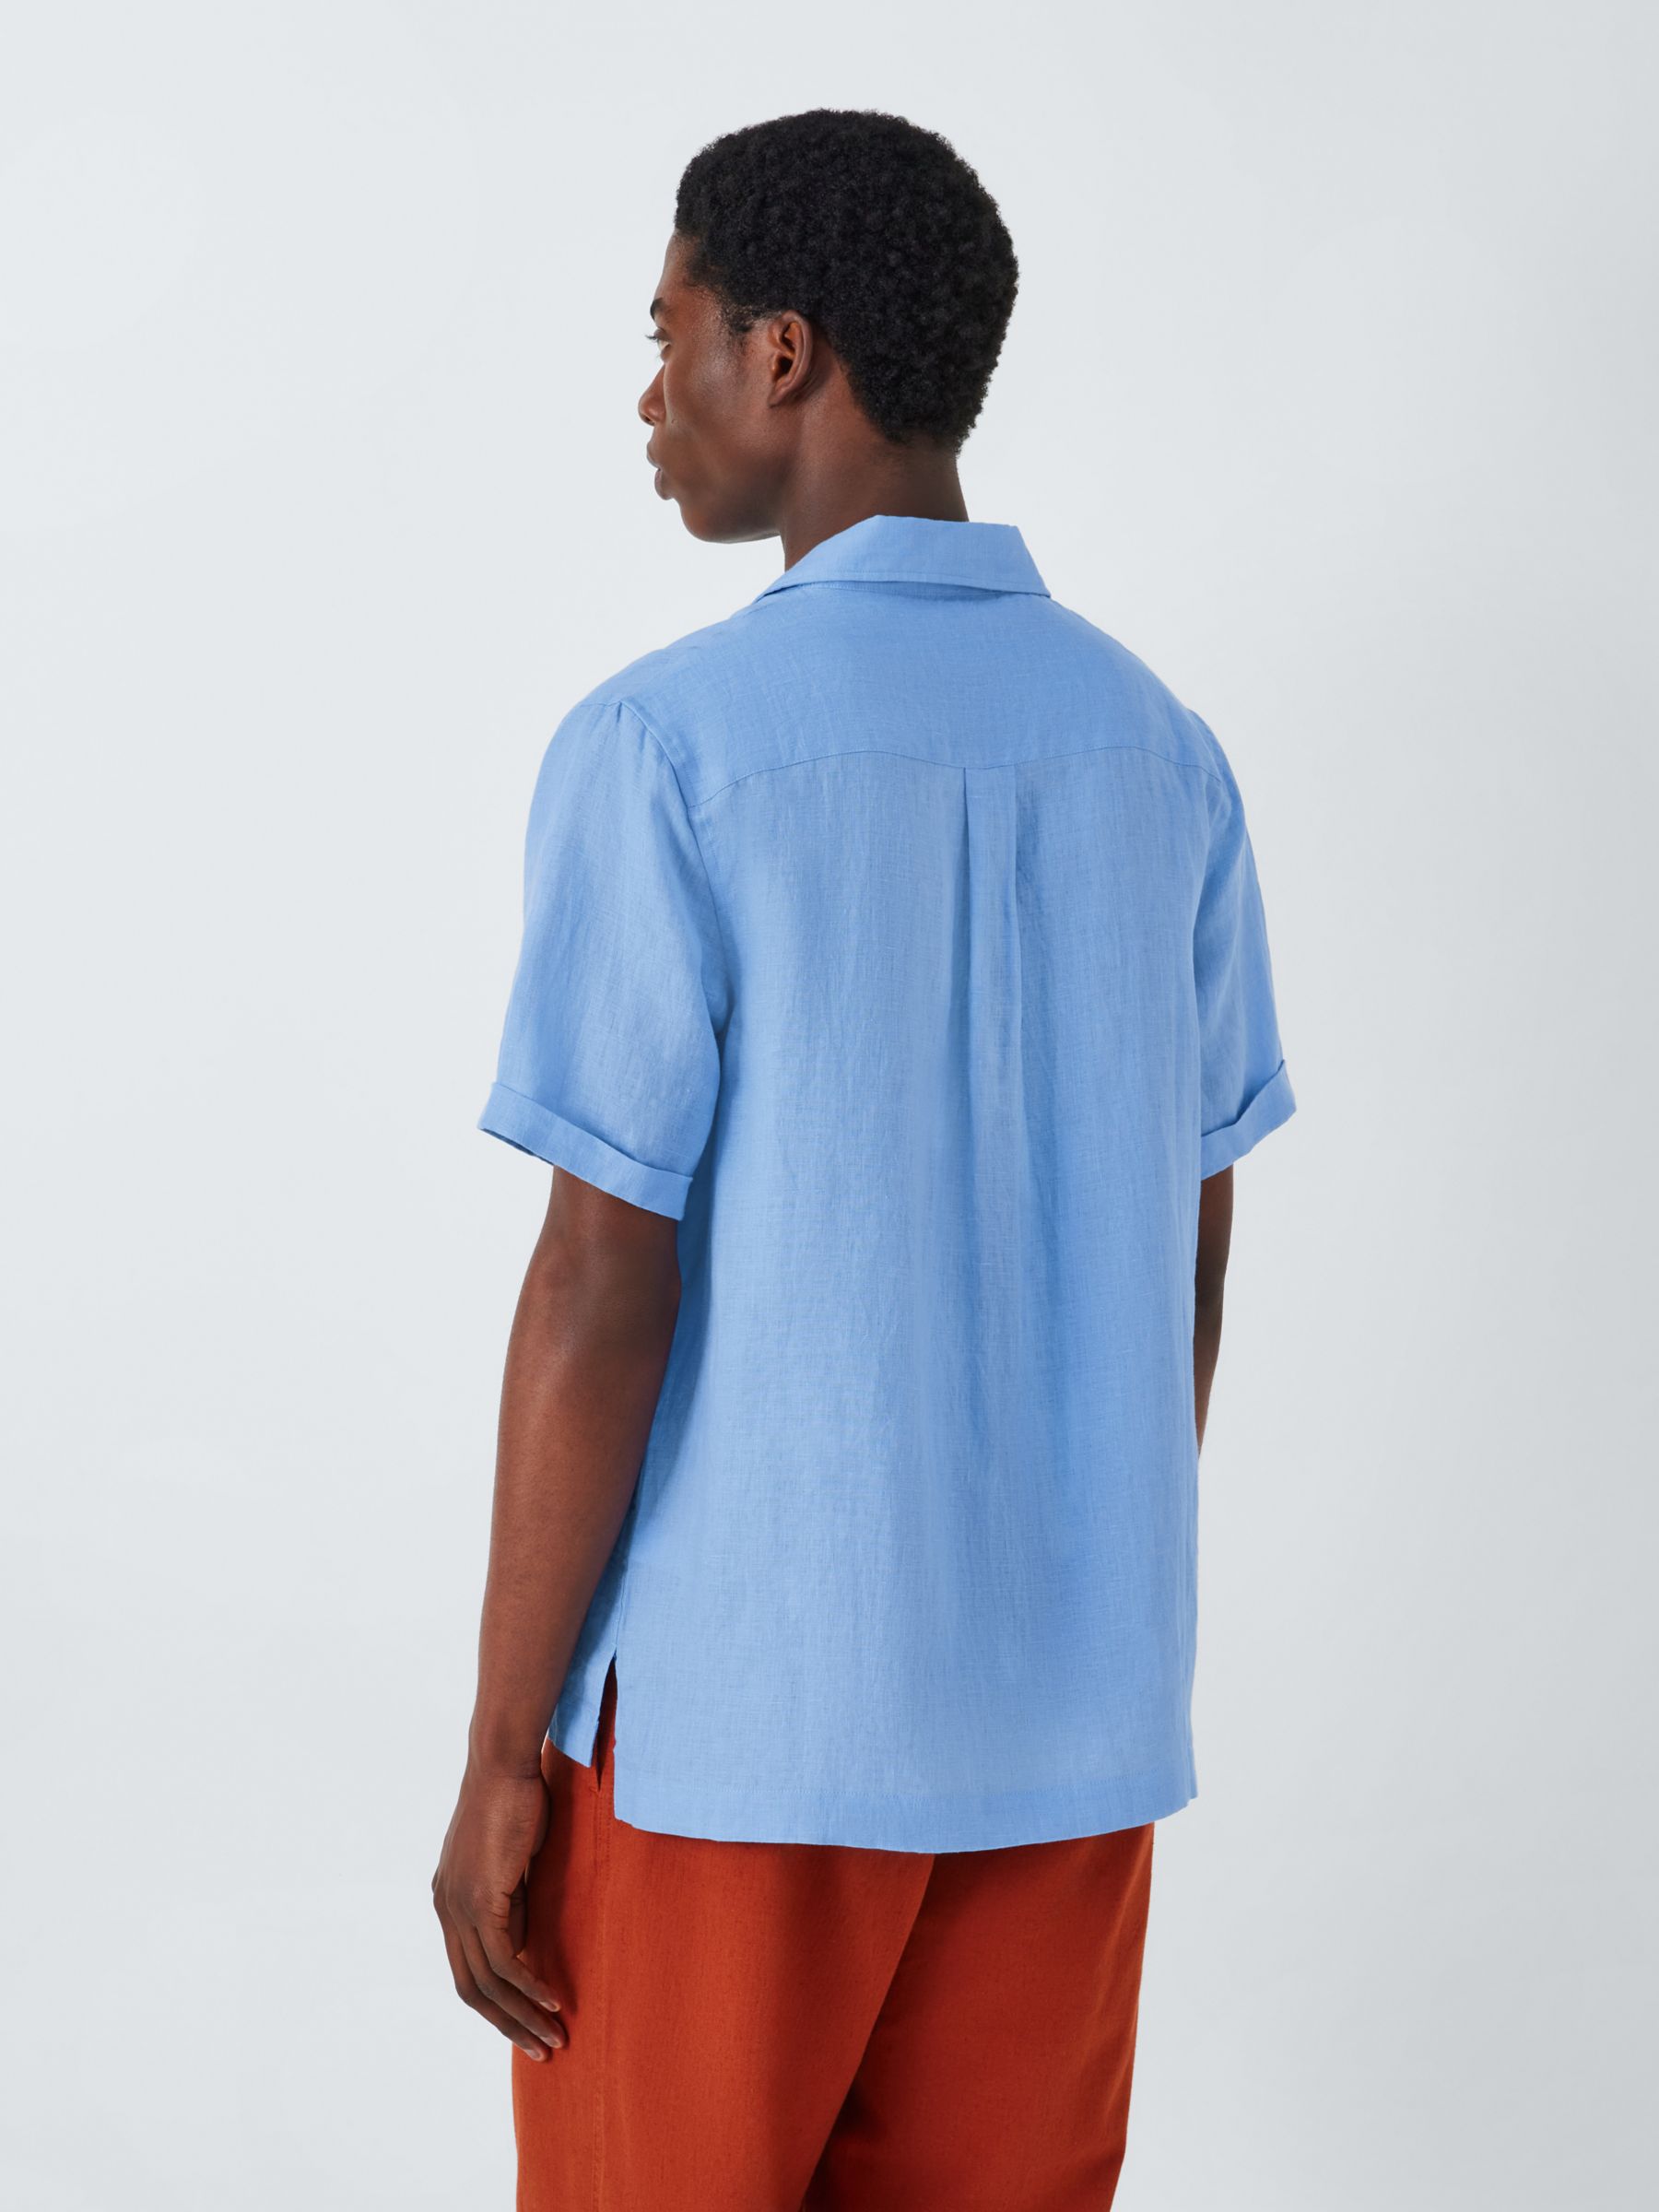 Buy John Lewis Linen Short Sleeve Beach Shirt, Blue Online at johnlewis.com